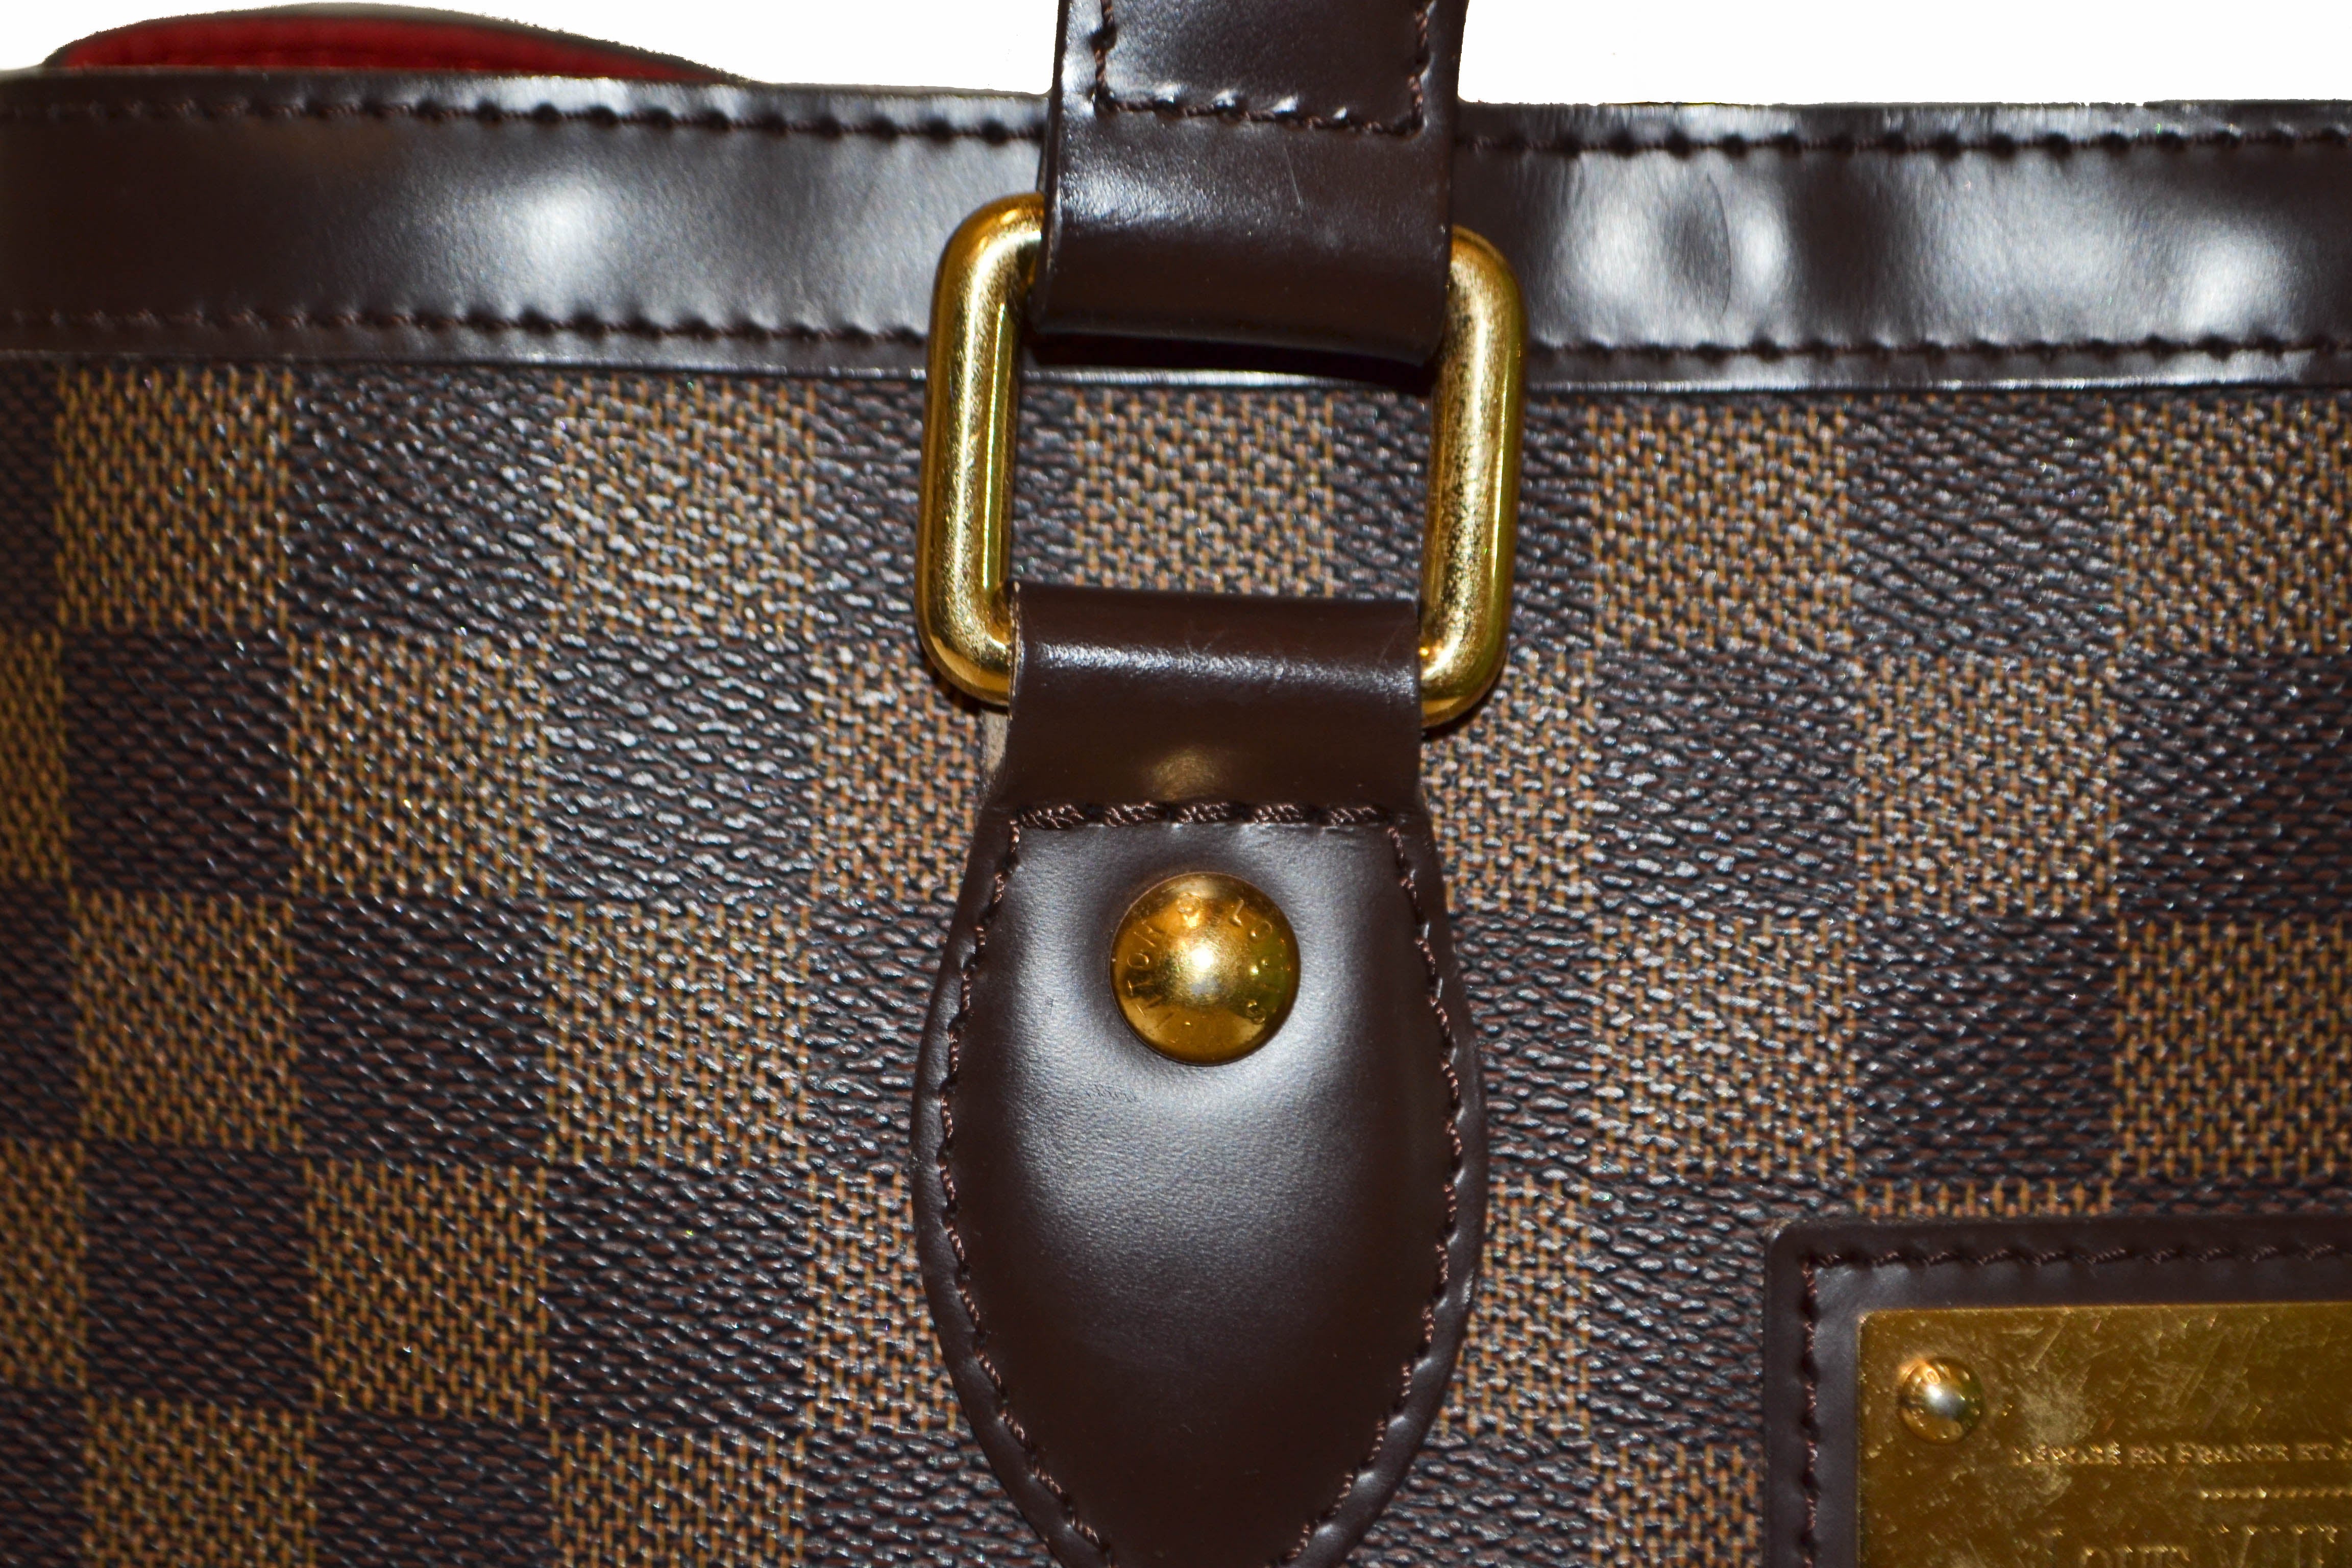 Authentic Louis Vuitton Damier Ebene Hampstead PM Handbag